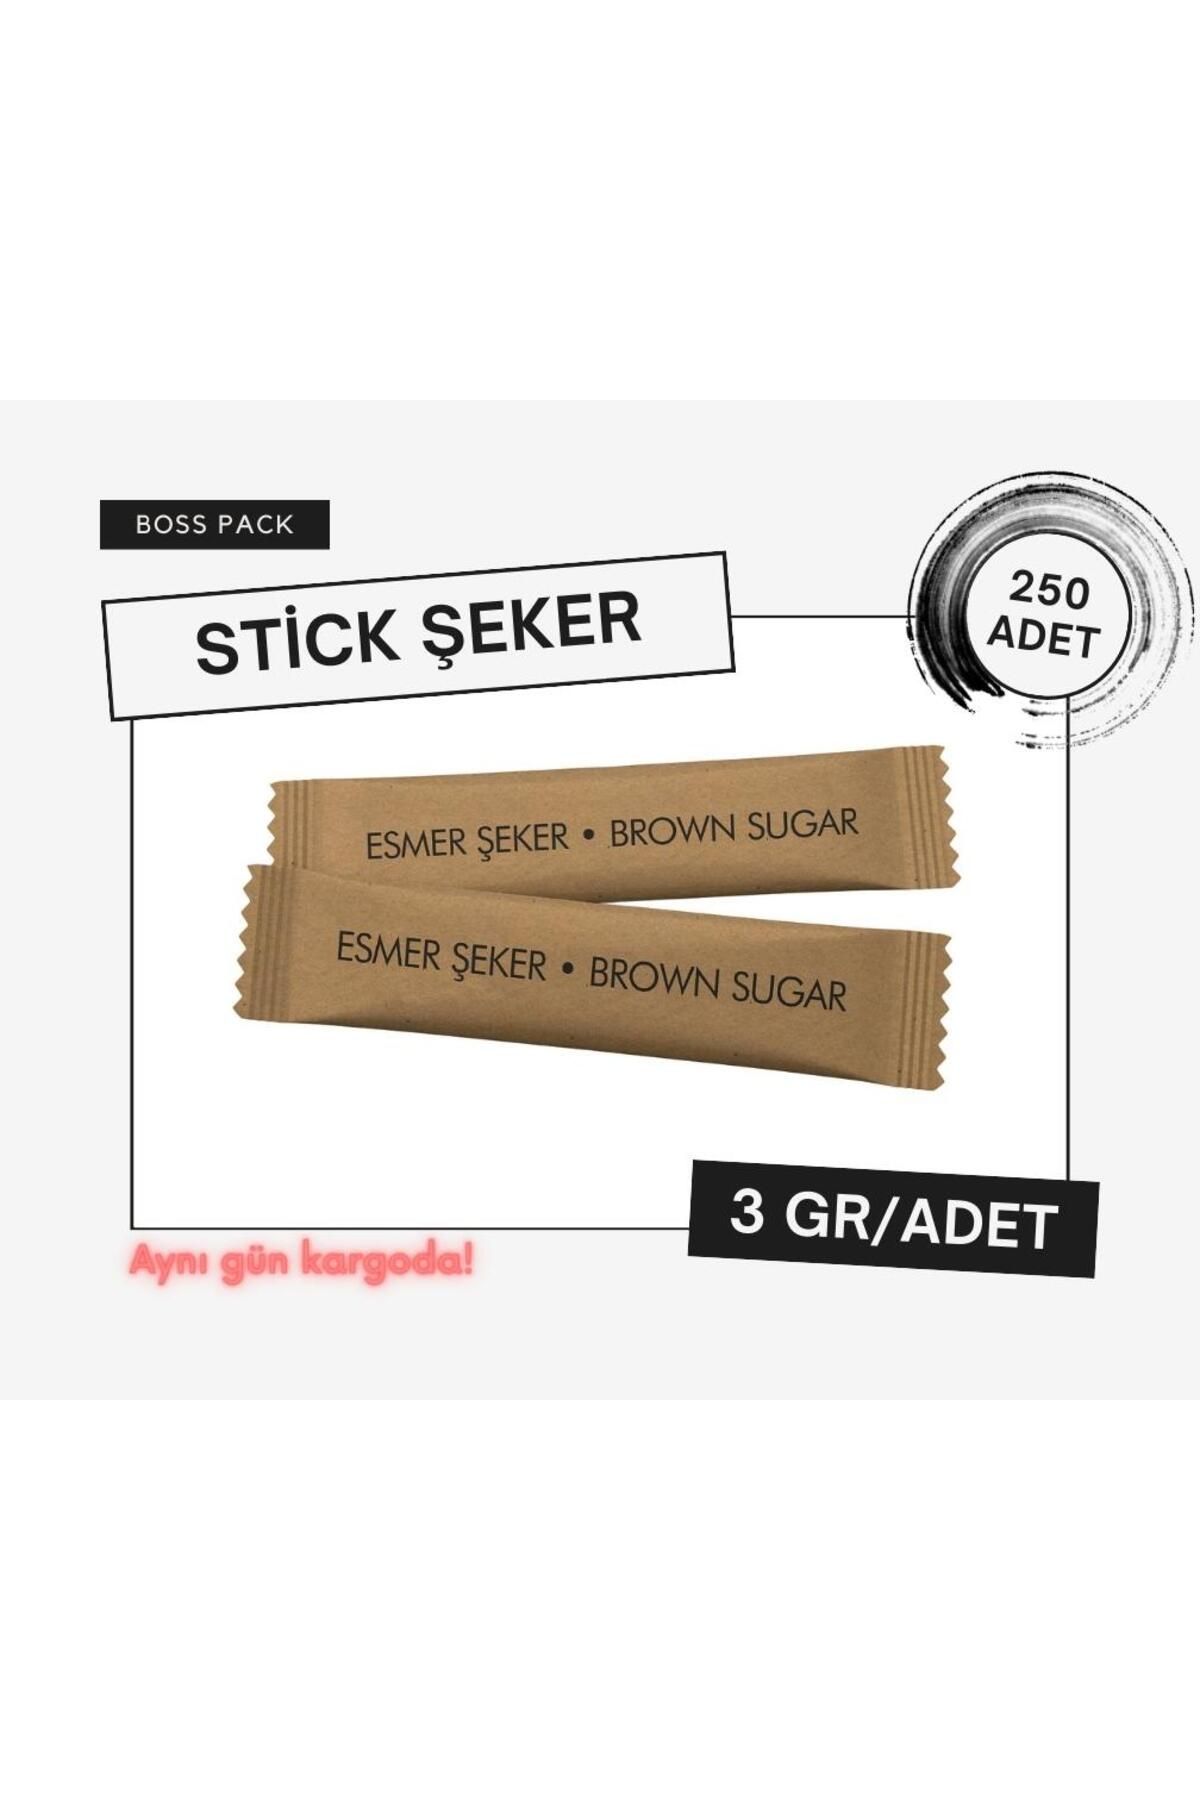 BossPack Stick Esmer Toz Şeker (3 GR/ADET) - 250 Adet